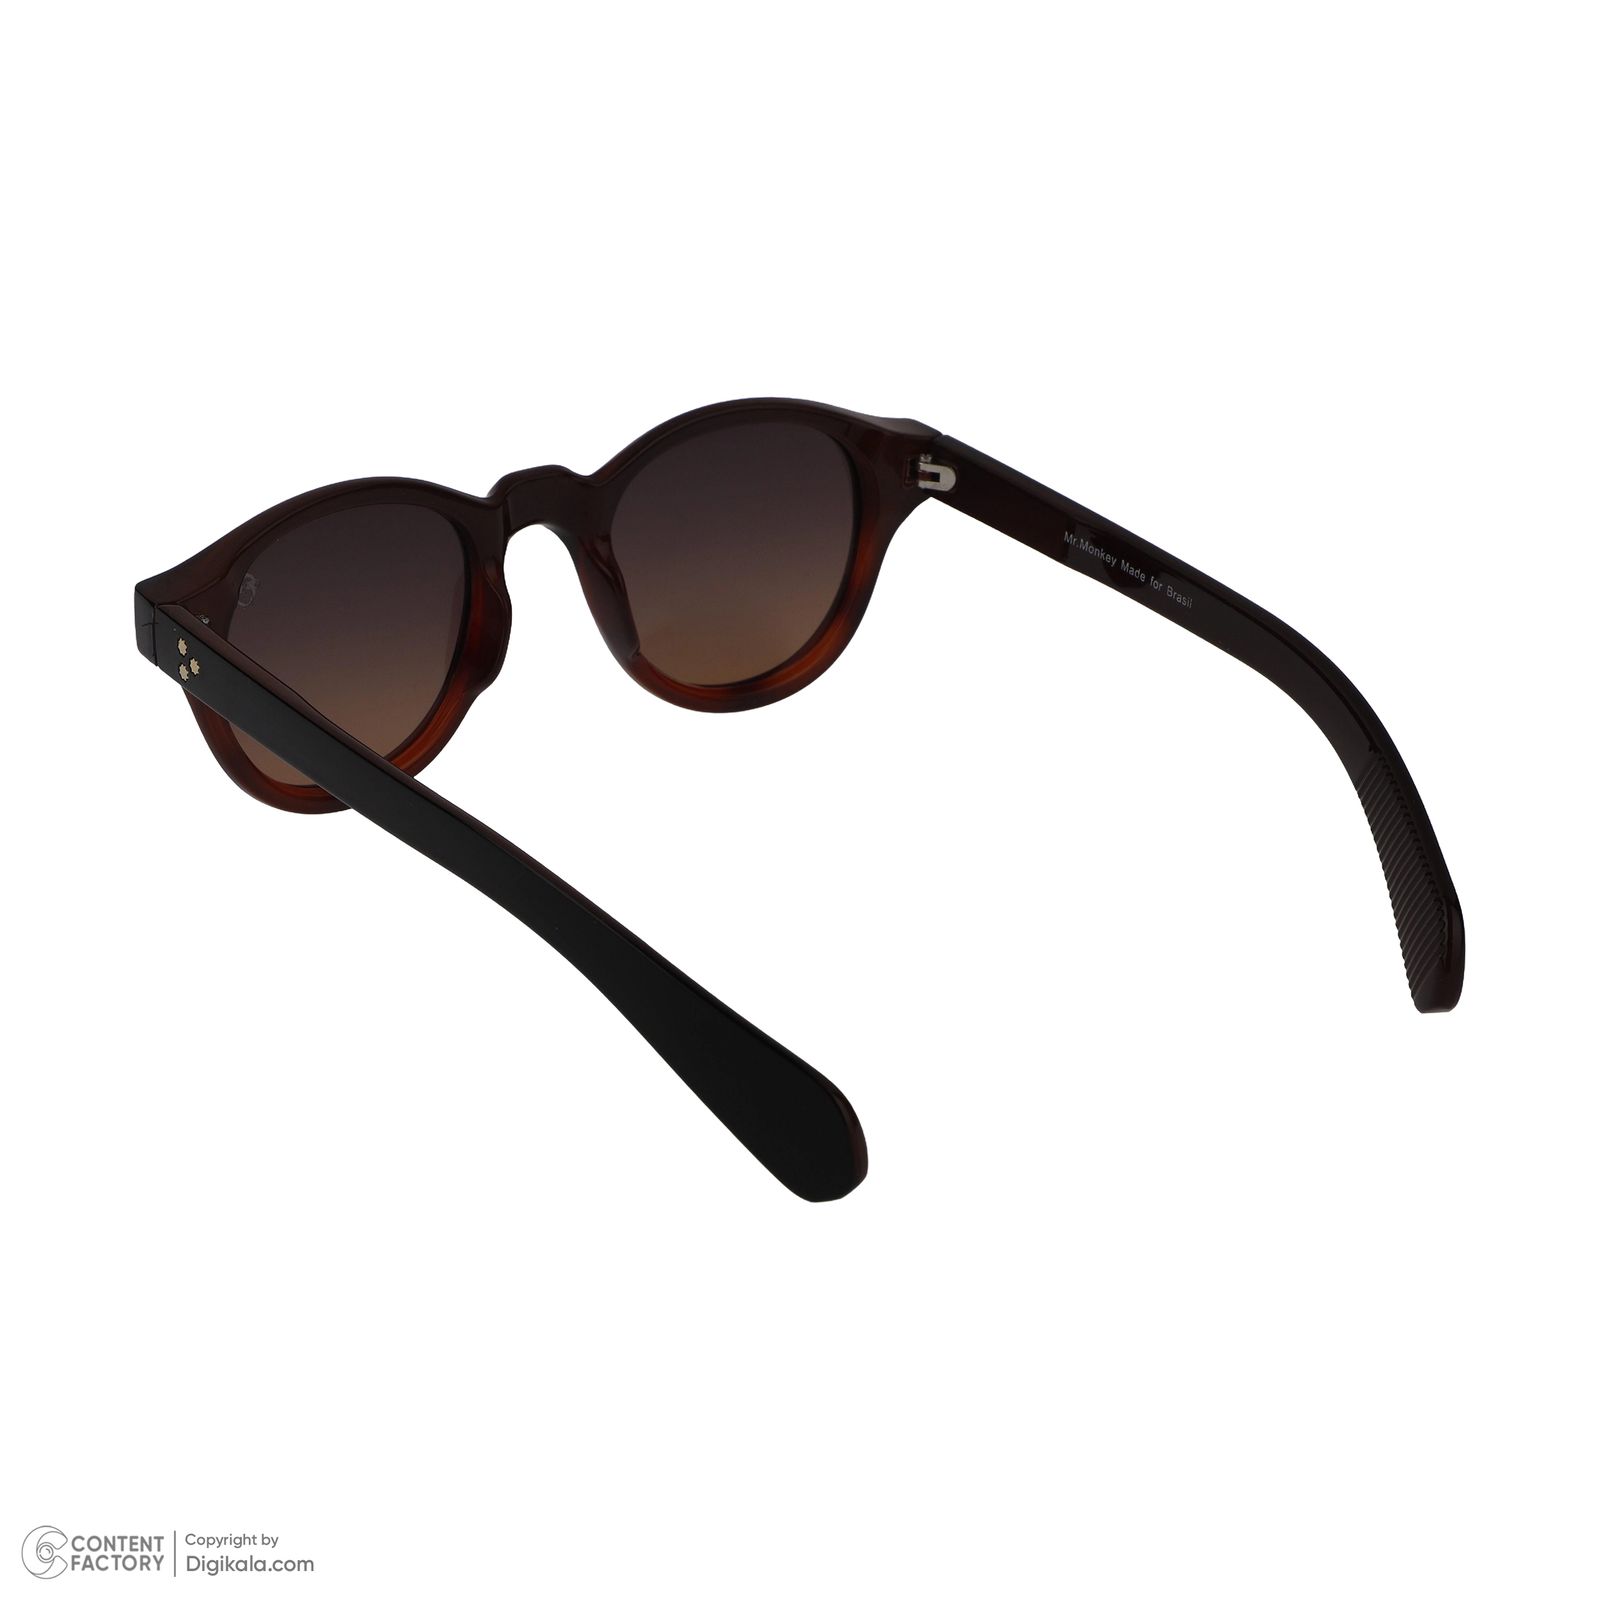 عینک آفتابی مستر مانکی مدل 6033 gr -  - 4